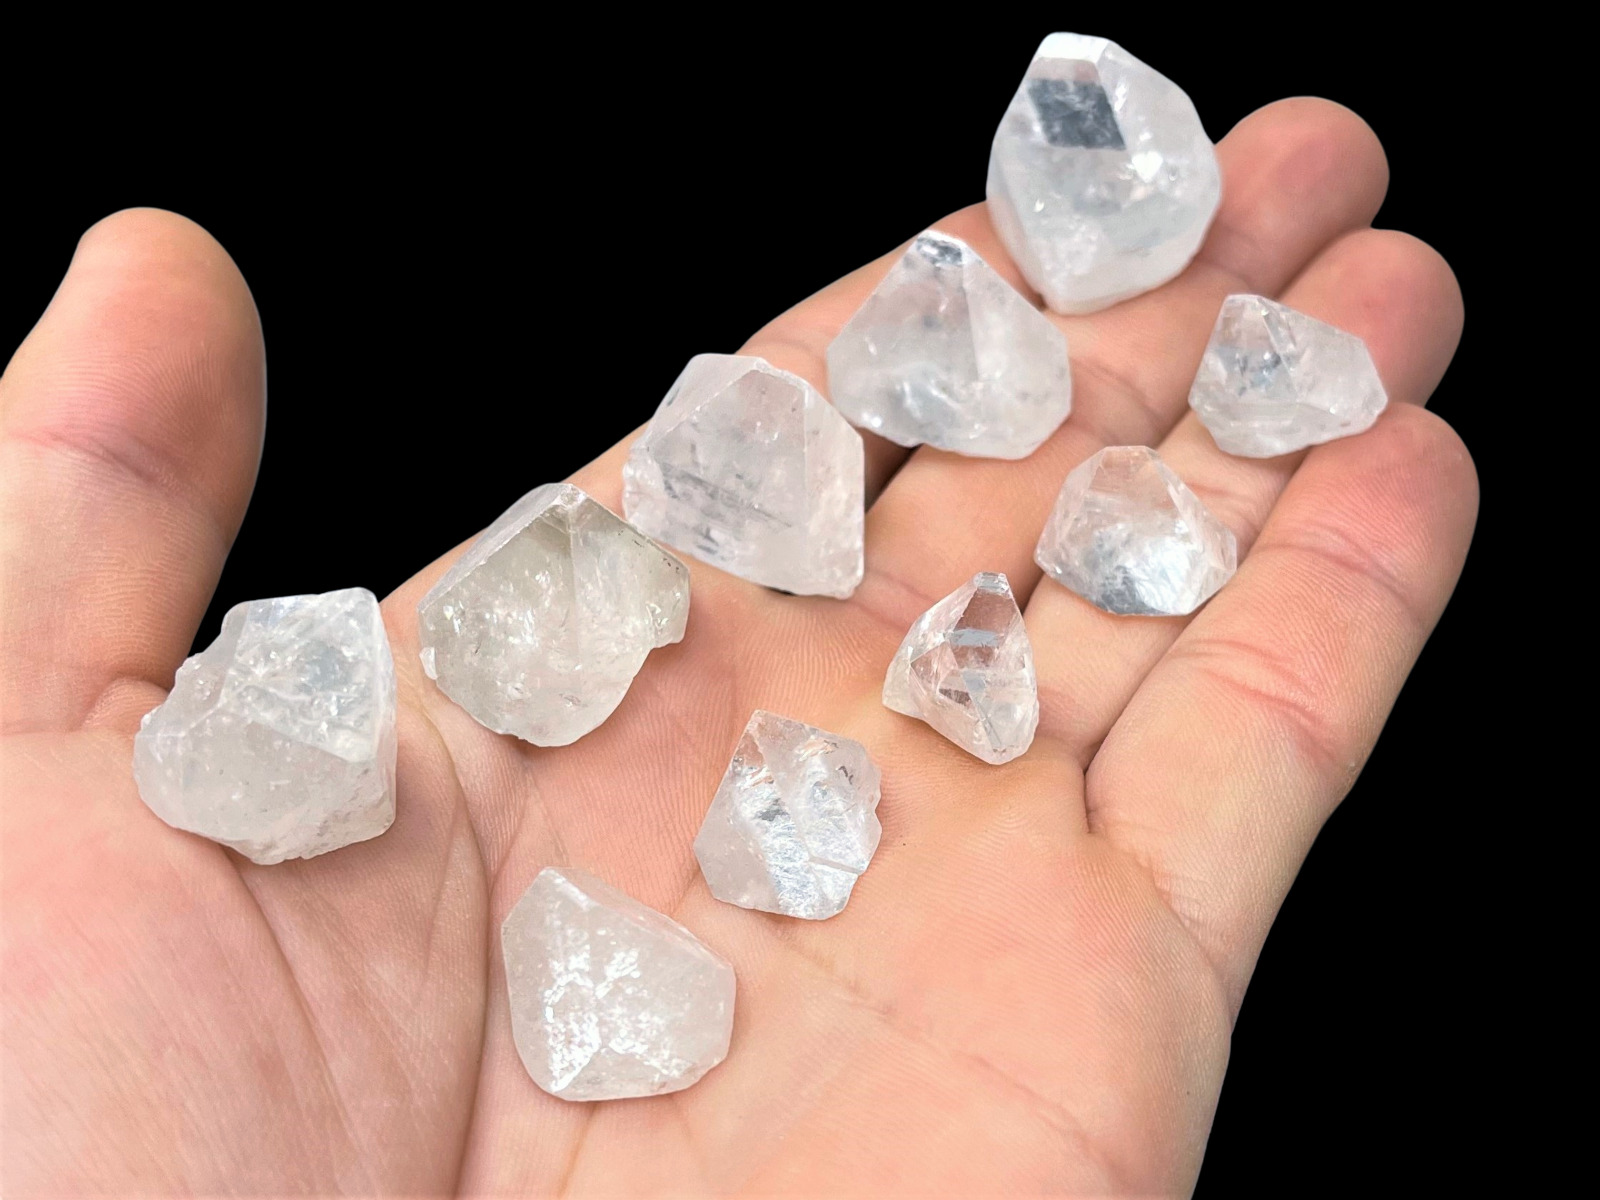 5 Pack Apophyllite Tips, Apophyllite Points: Two Sizes (Apophyllite Crystals)